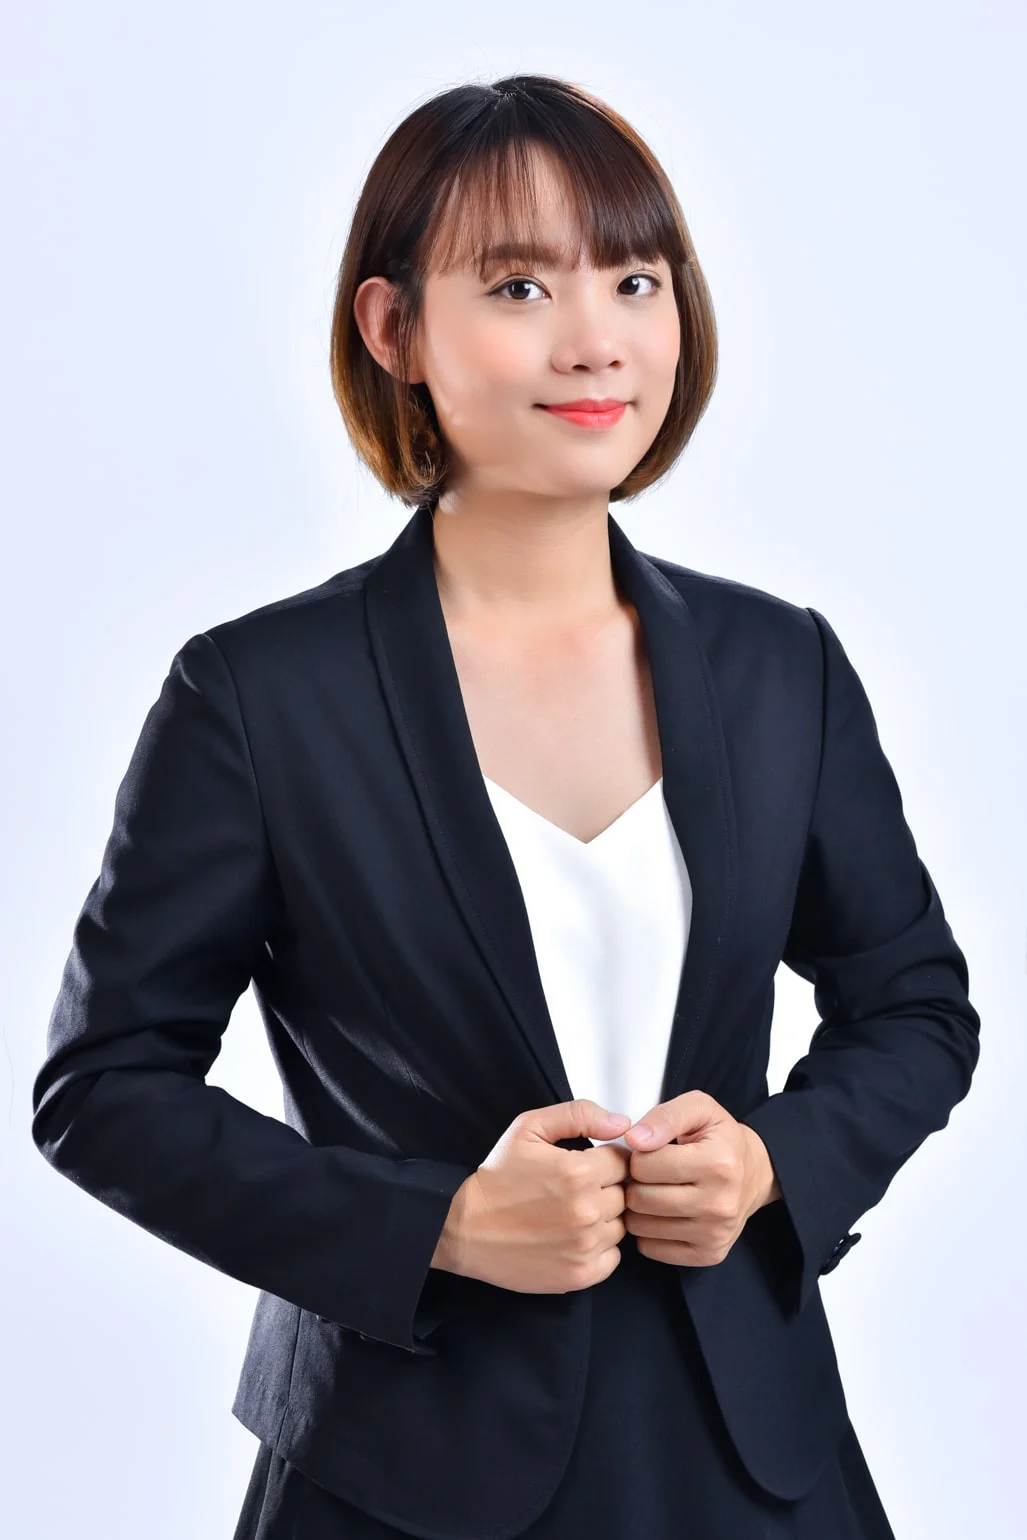 Doanh nhan nghe thuat 3 min - Dịch vụ chụp ảnh CV đẹp, chuyên nghiệp tại Tp.HCM - HThao Studio